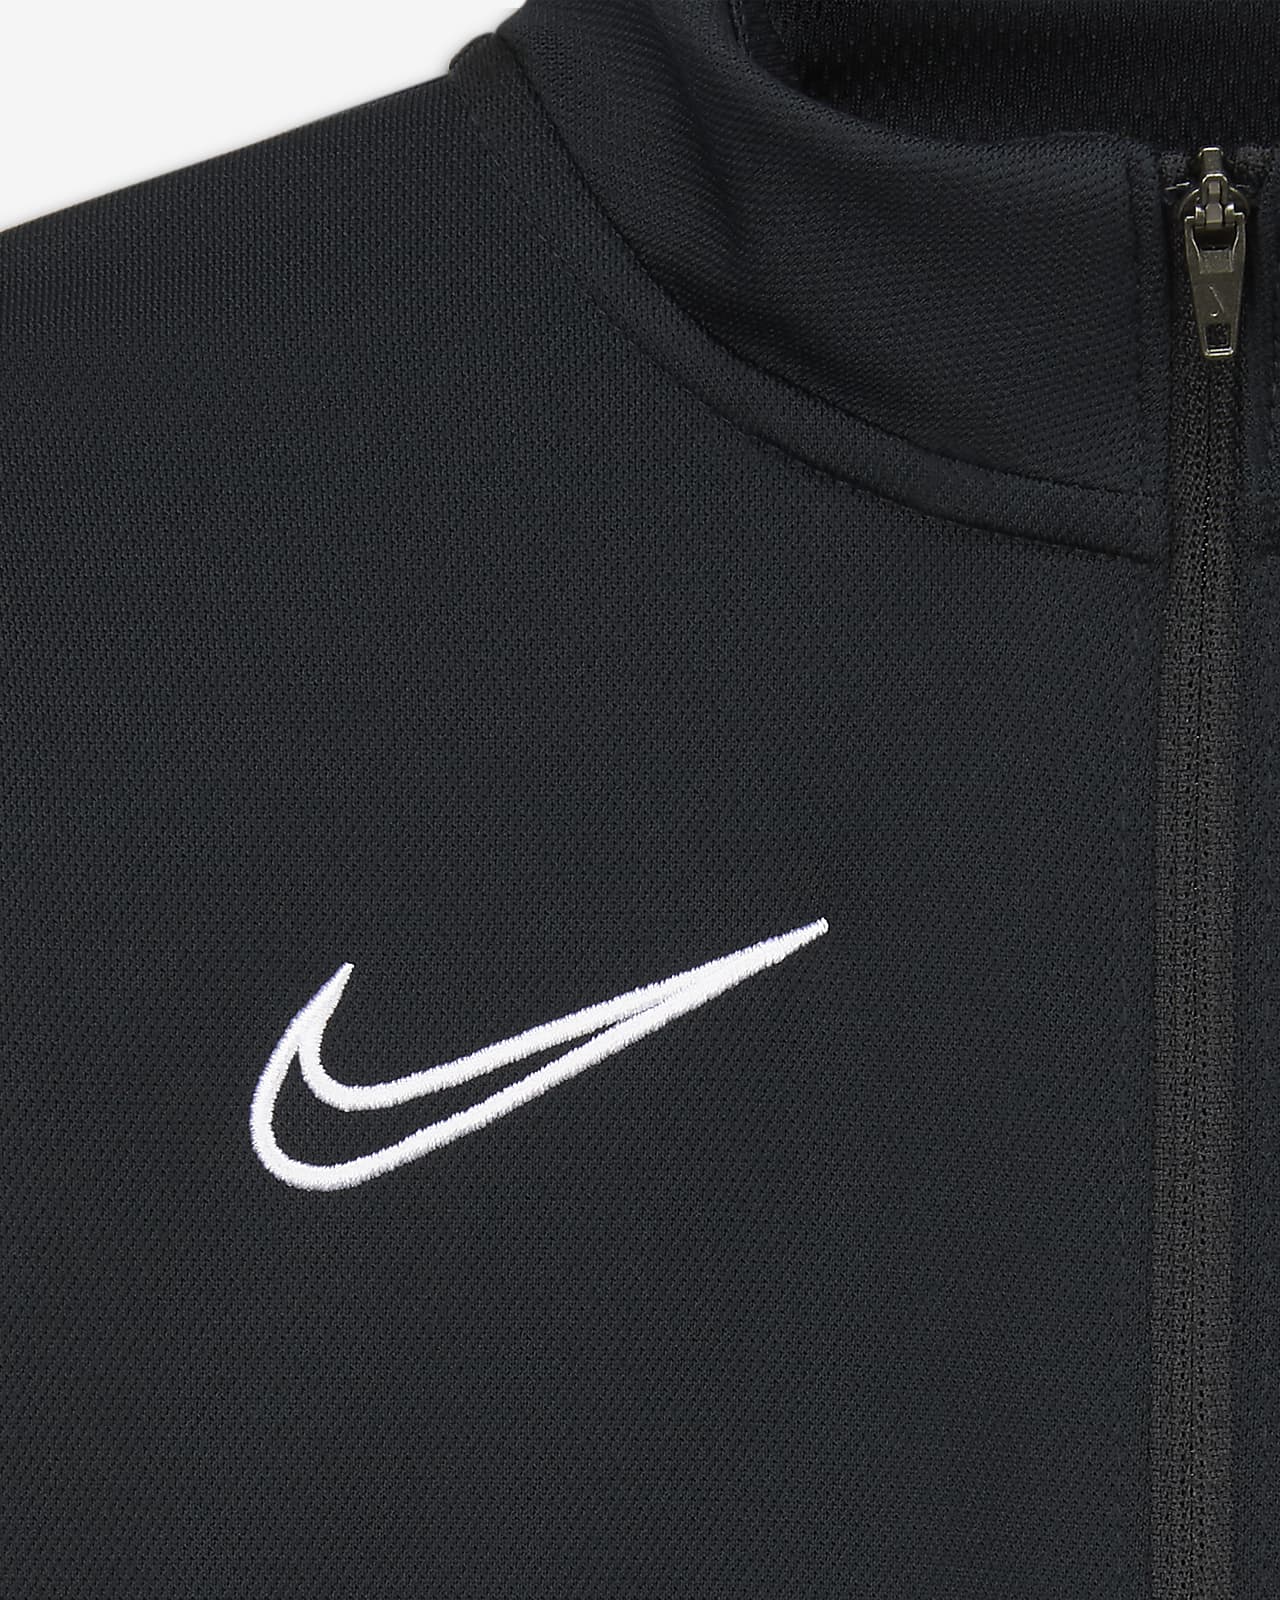 Nike公式 ナイキ Dri Fit アカデミー ジュニア ニット サッカートラックスーツ オンラインストア 通販サイト